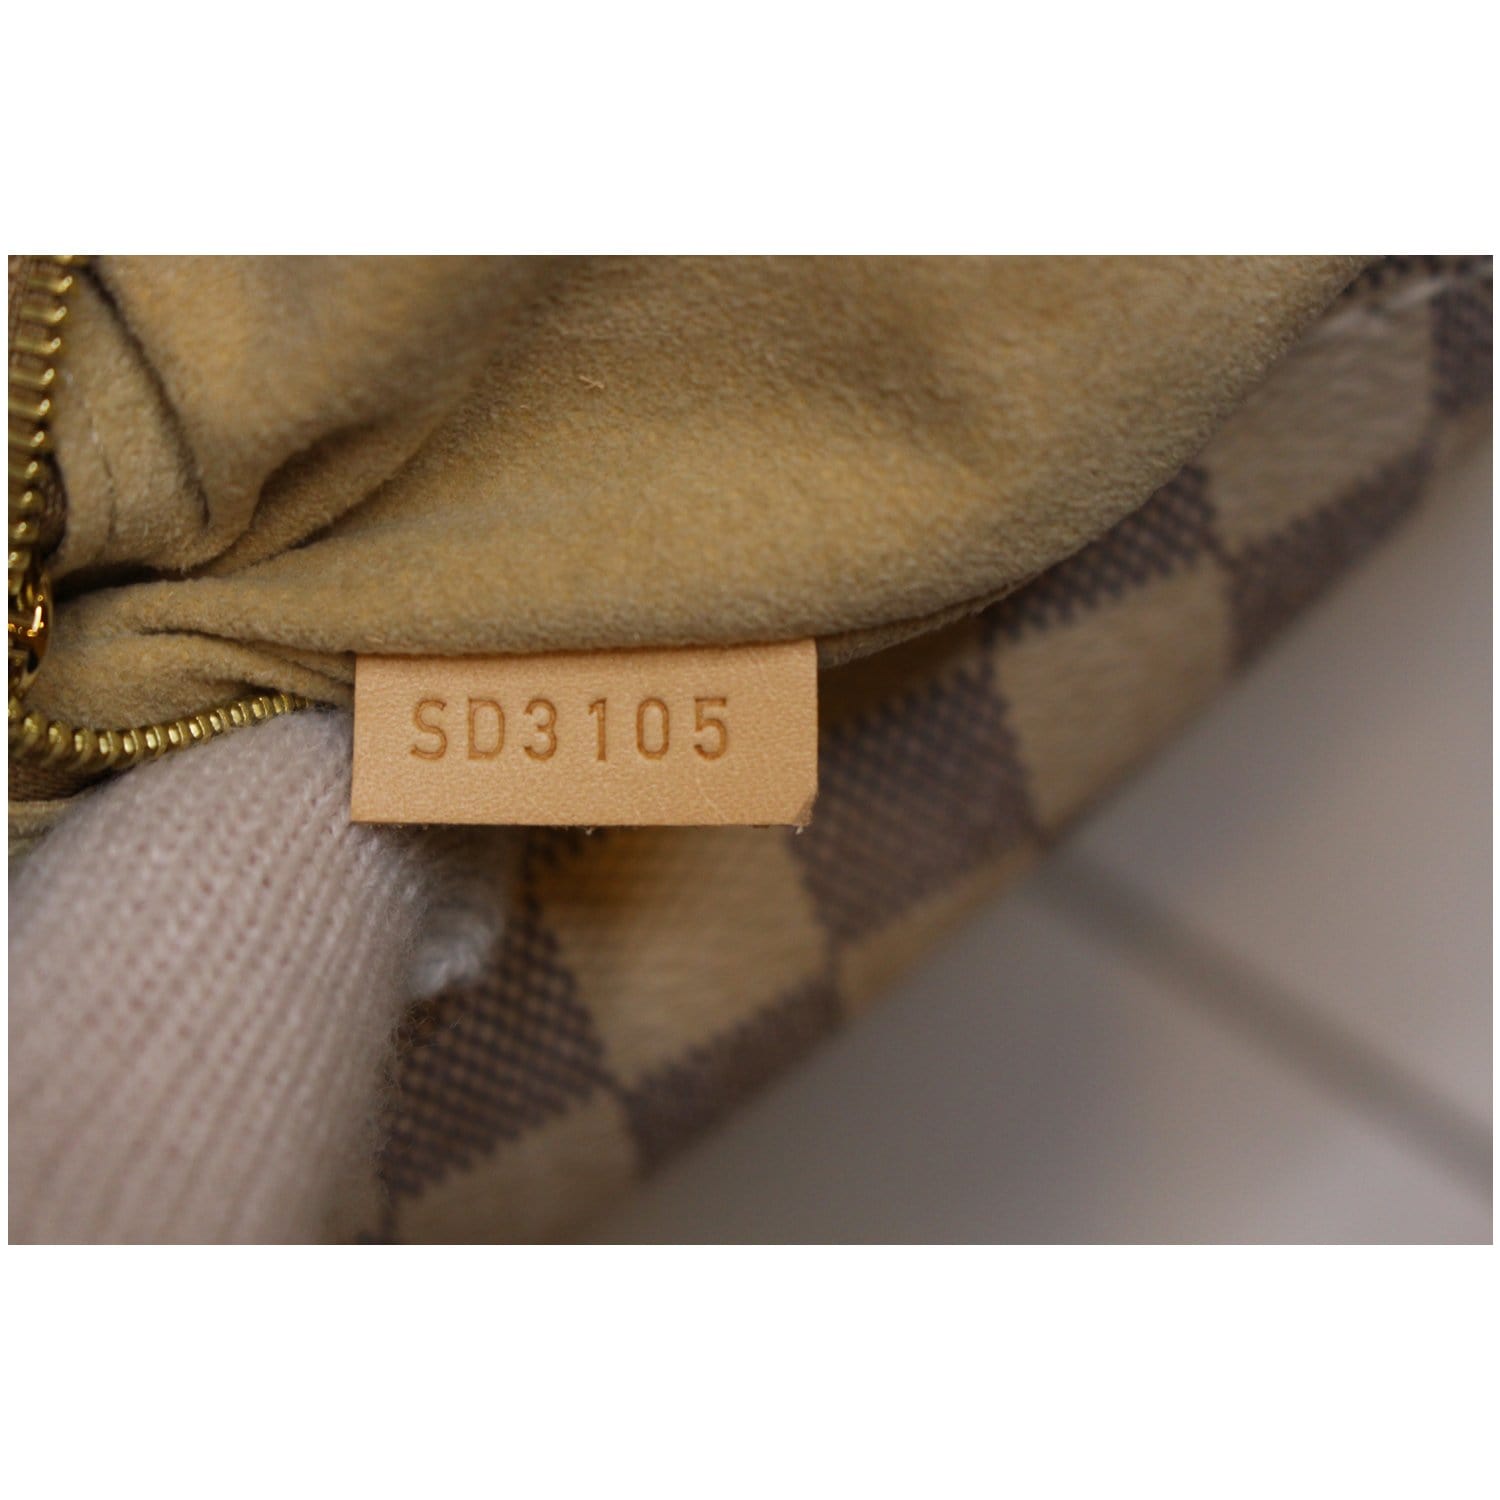 Louis Vuitton Artsy MM Damier Azur Beige ref.363057 - Joli Closet